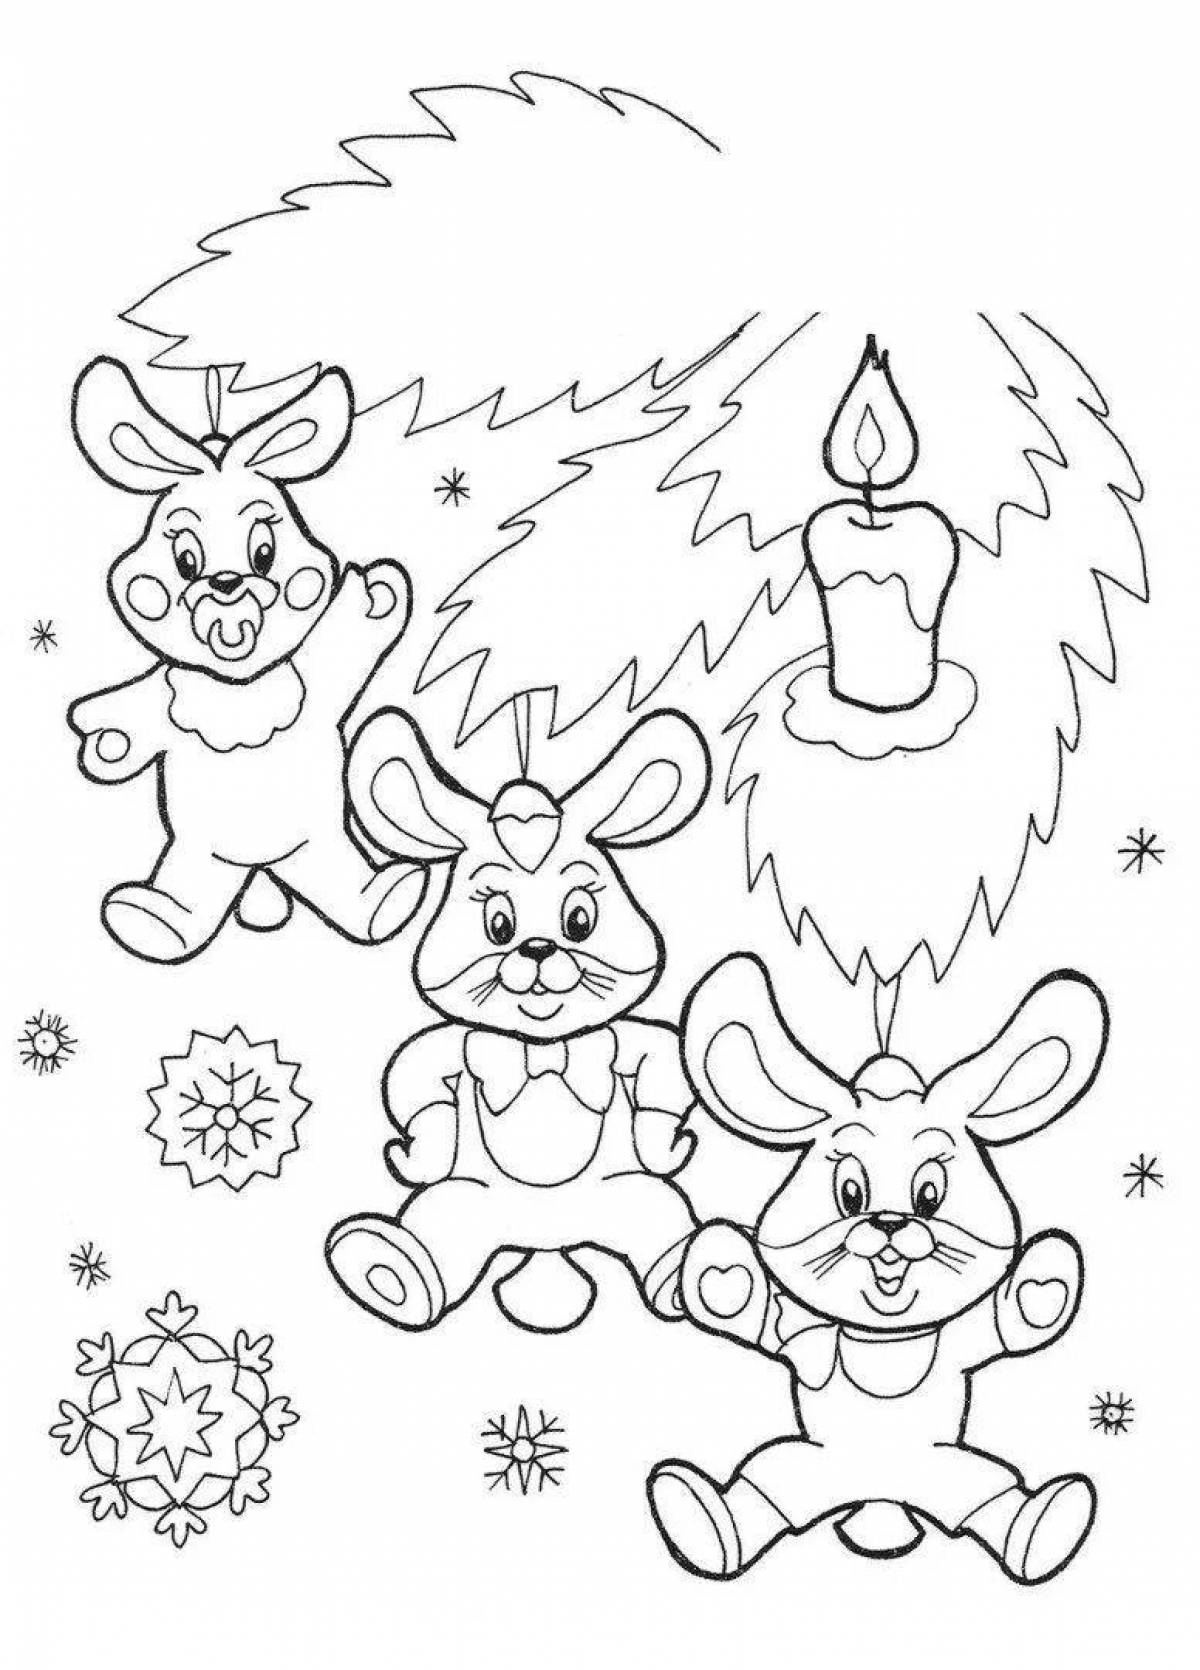 Joyful new year bunny